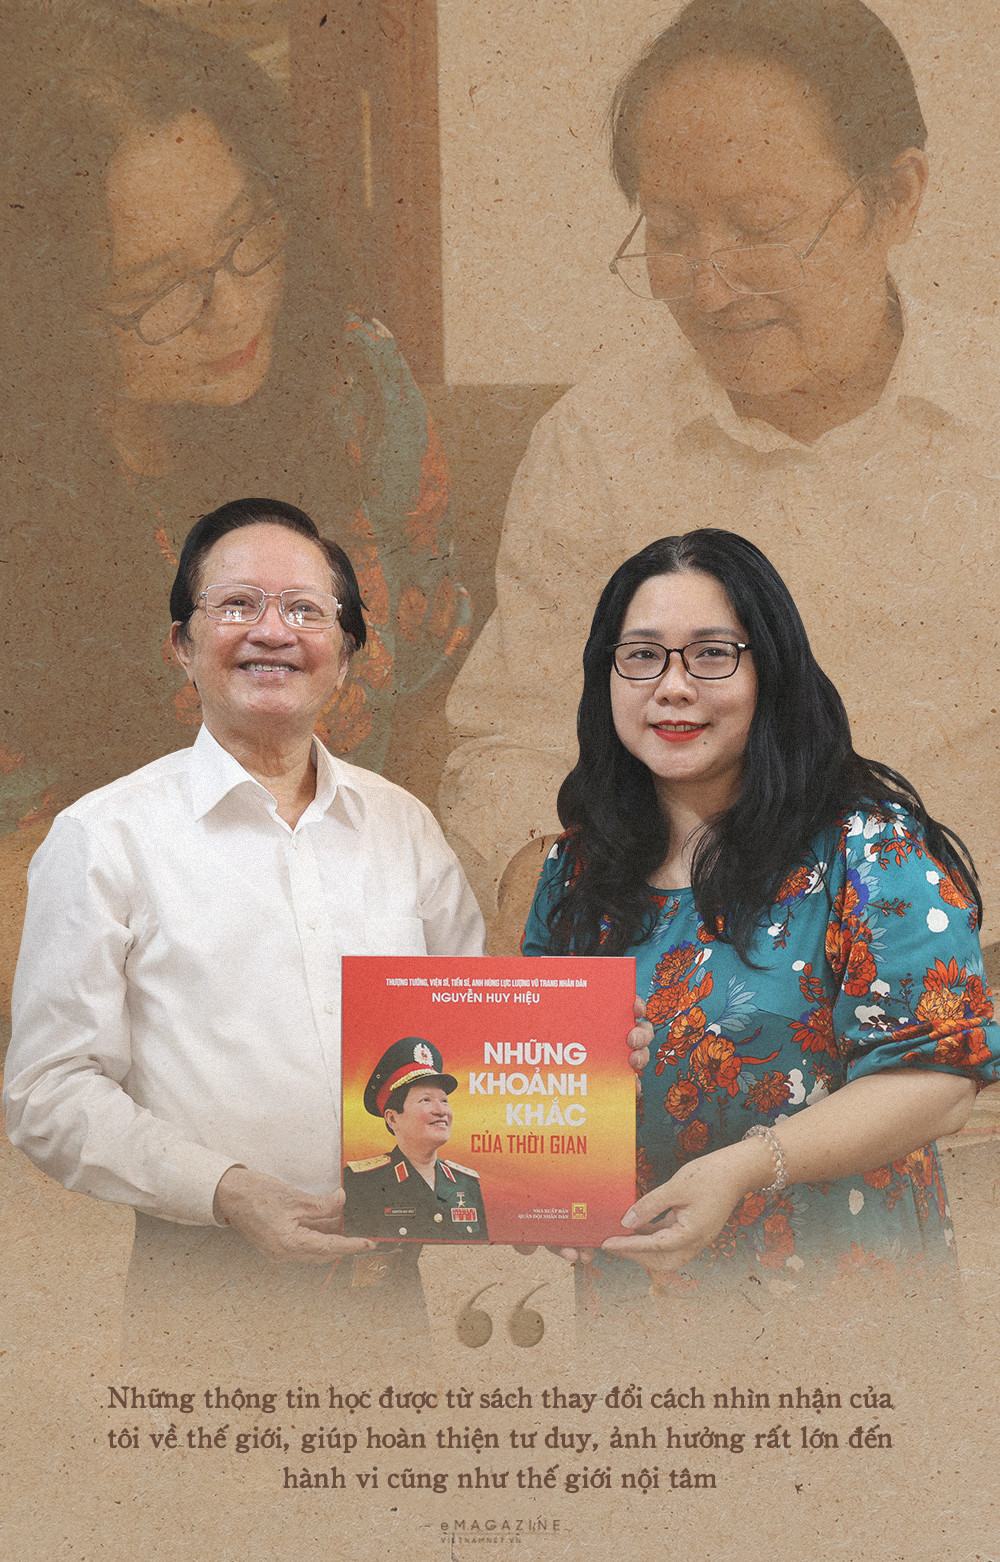 Thượng tướng Nguyễn Huy Hiệu: 'Tôi không có tài sản gì, chỉ có những cuốn sách'